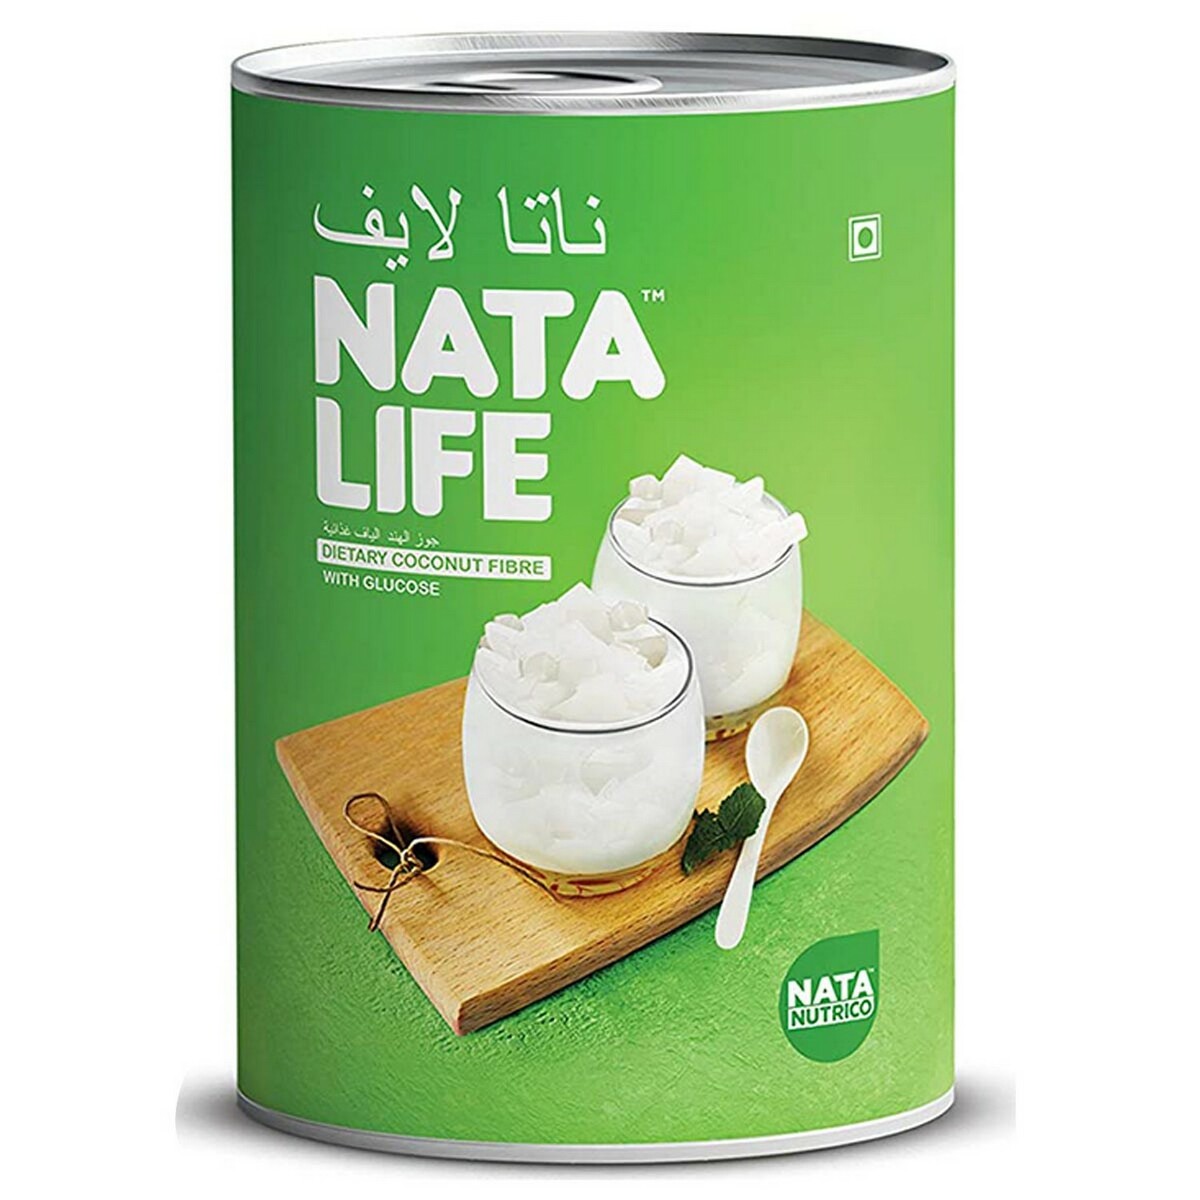 Nata Nutrico Nata Life 500gm